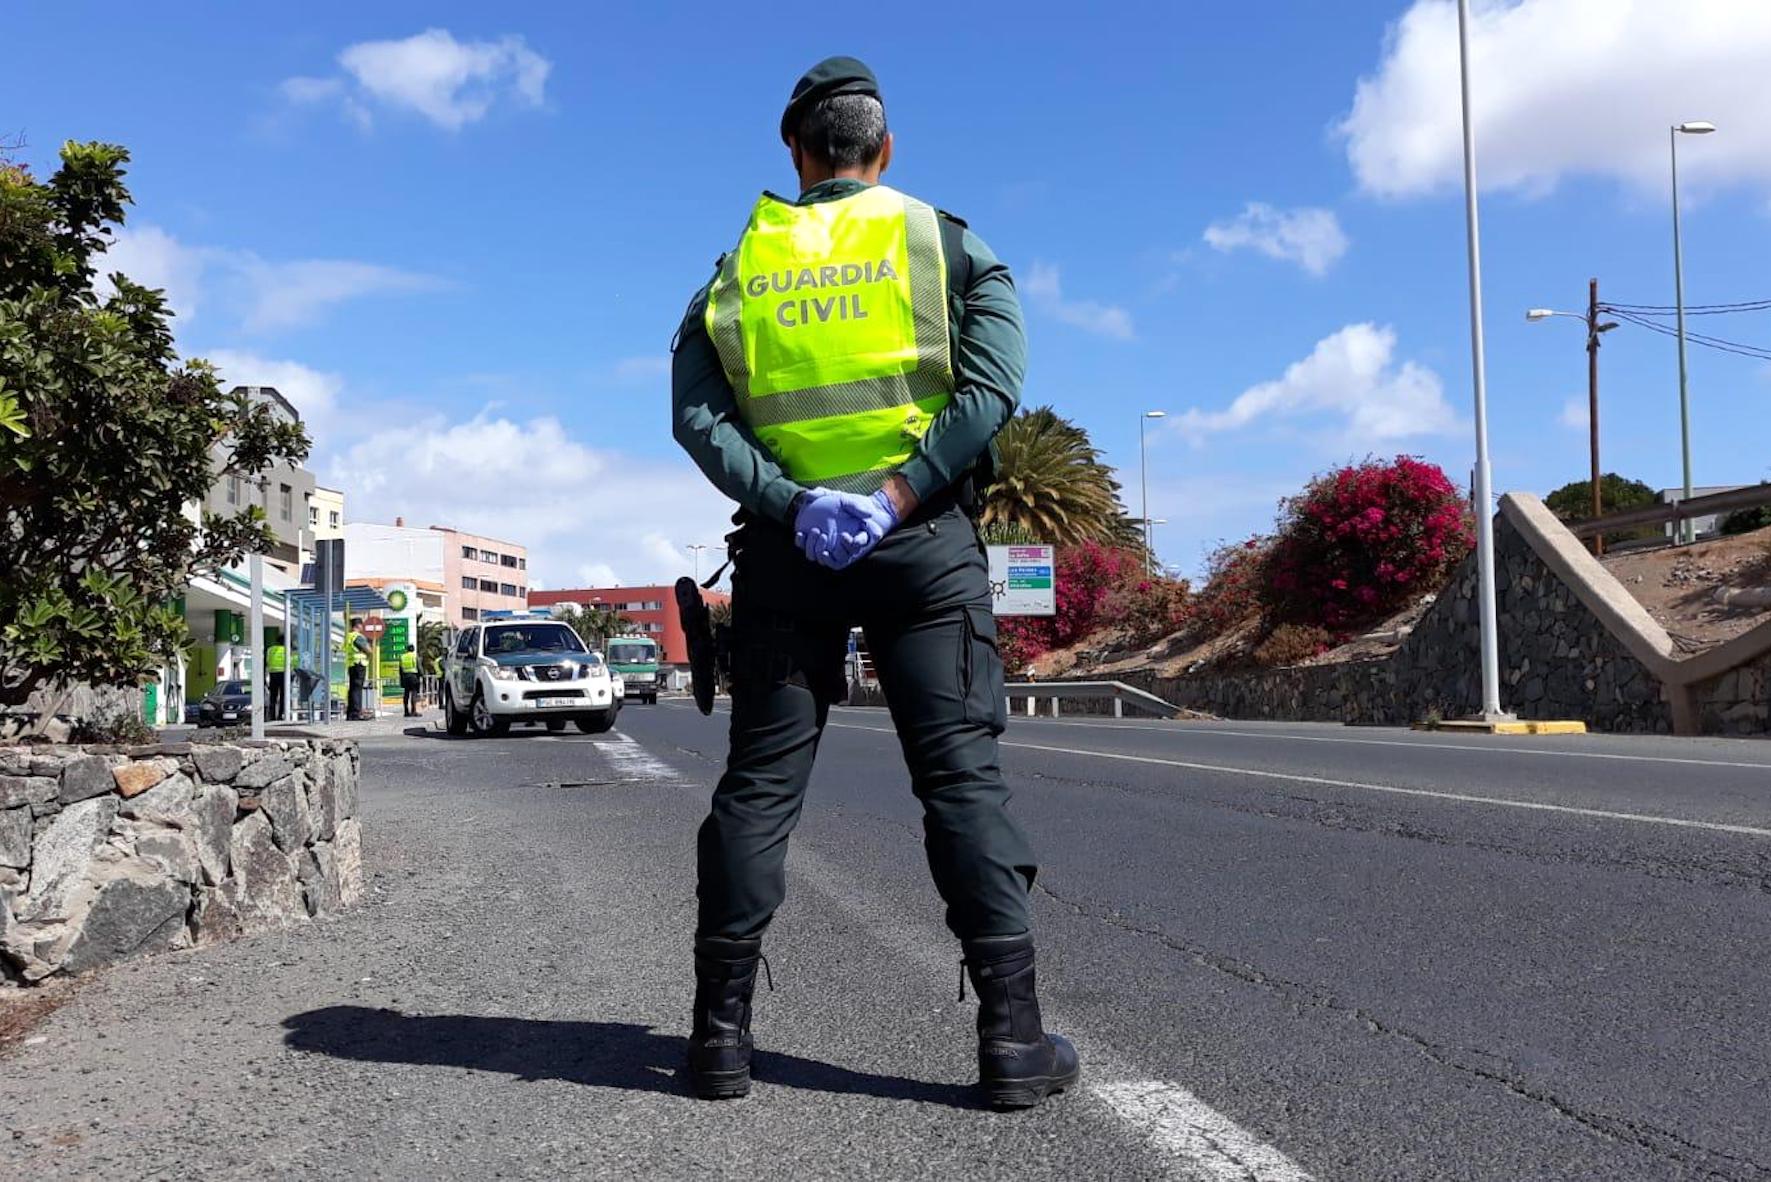 La Guardia Civil intensificará sus actuaciones en El Hierro para evitar que se incumpla la normativa ante Covid-19